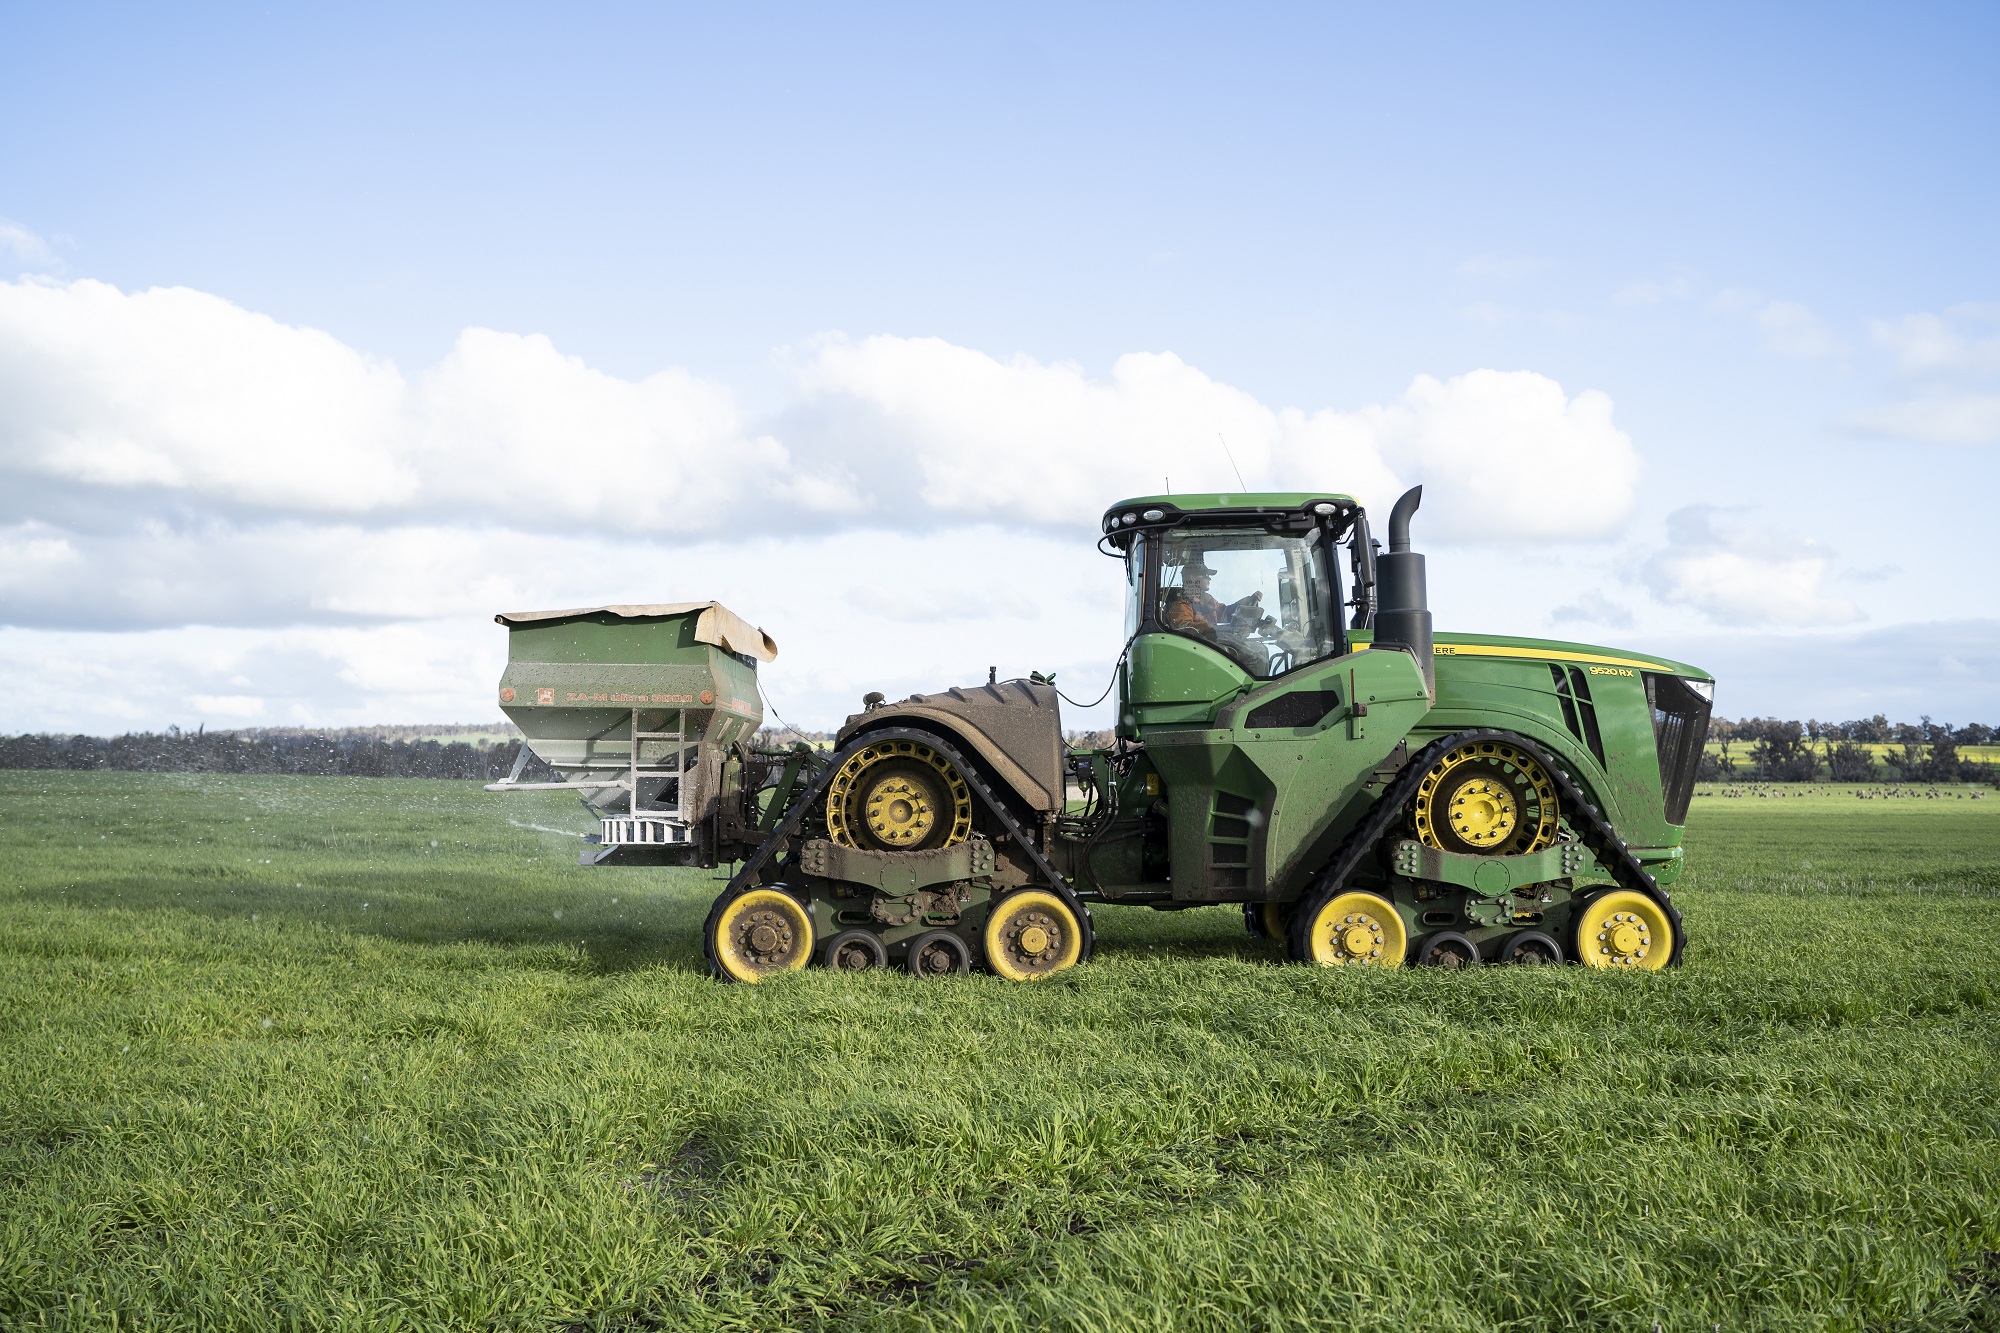 A green tractor spreads urea fertiliser in a paddock